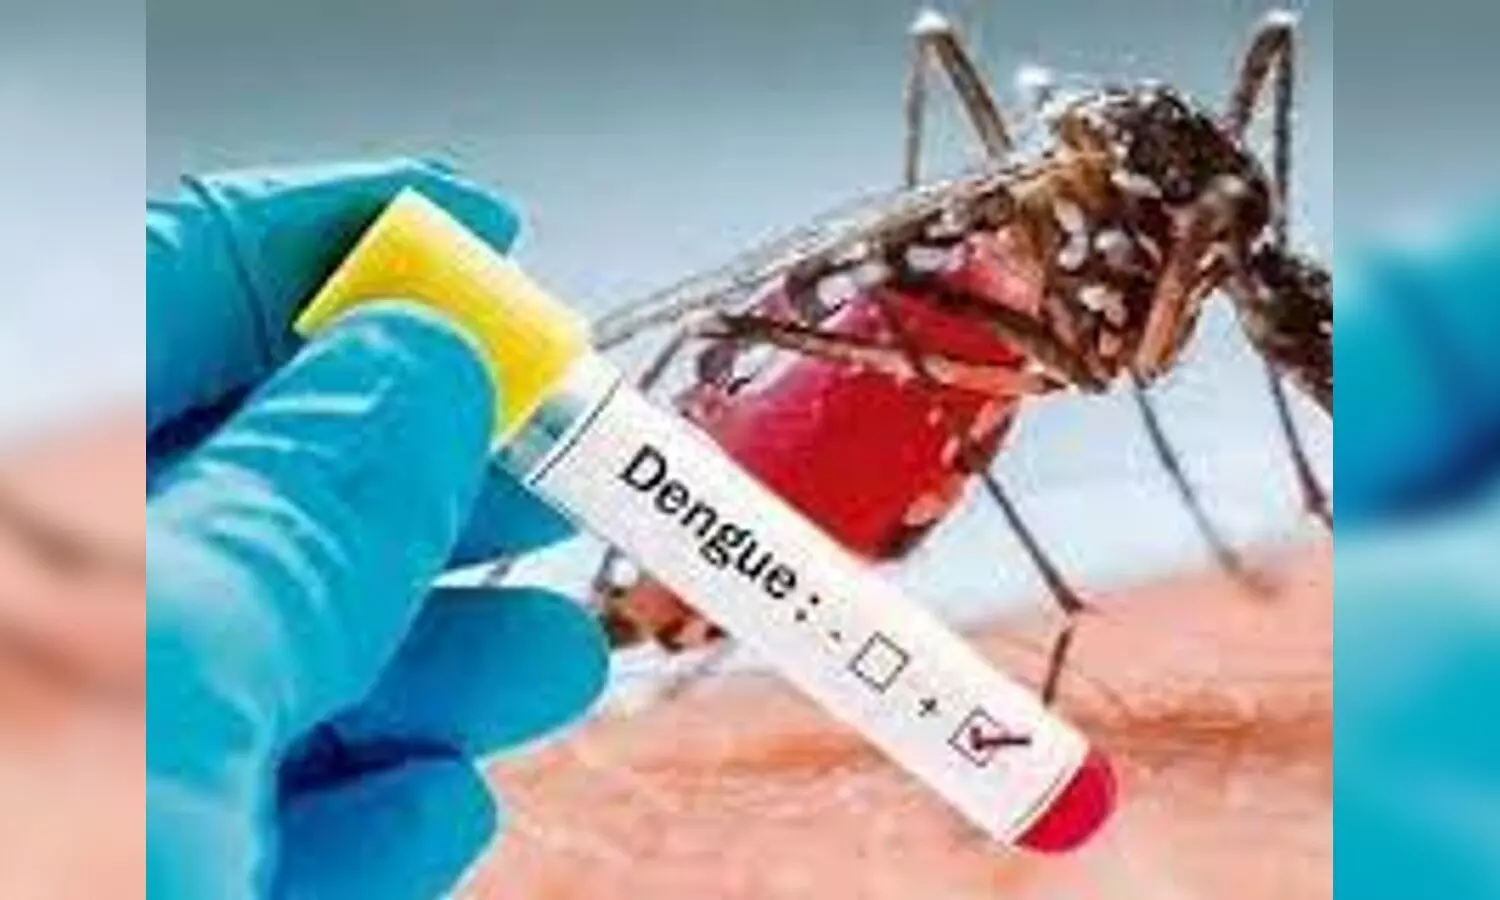 Dengue in Lucknow: स्वास्थ्य विभाग की कोशिशें बेअसर! पिछले 16 दिनों में मिले 250 से ज़्यादा नये मरीज़, 39 घरों को नोटिस